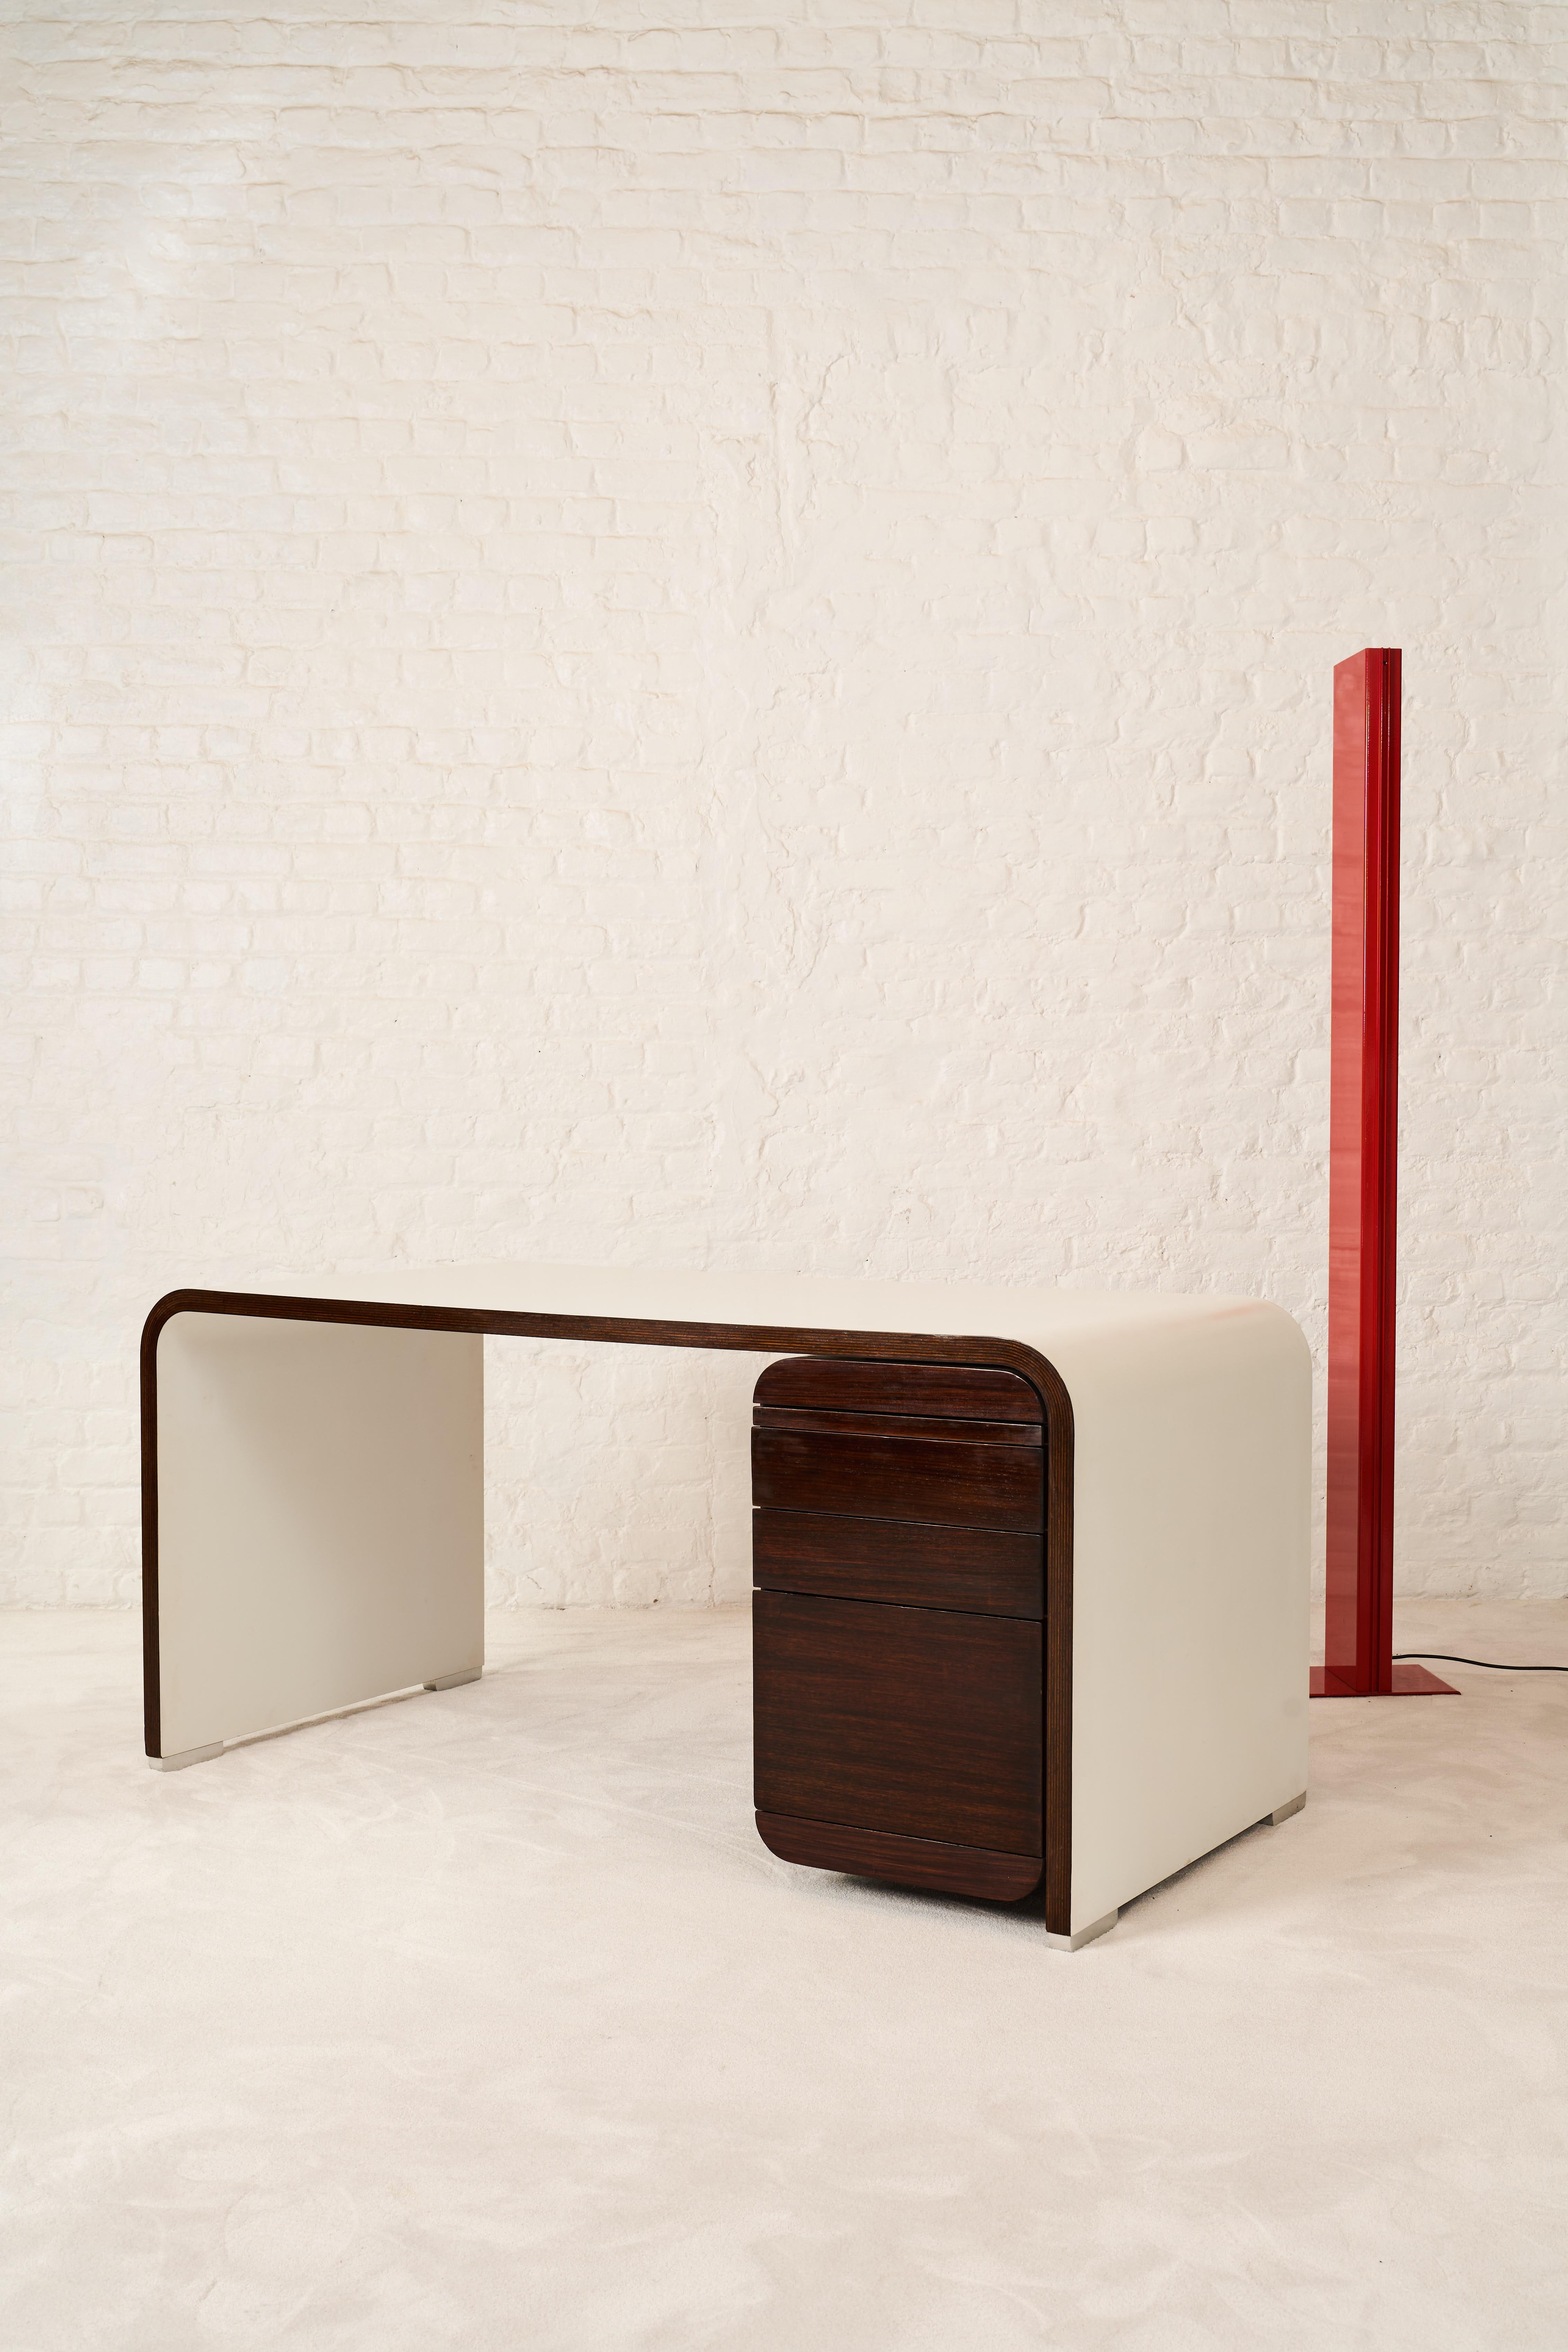 Schreibtisch, hergestellt von der belgischen Firma Bergwood in den 1970er Jahren. Bergwood ist bekannt für seine Produktionen von Jules Wabbes. Anhand von Skizzen, die in dem Buch 'Jules Wabbes - Interior Architect' veröffentlicht sind, ist nicht